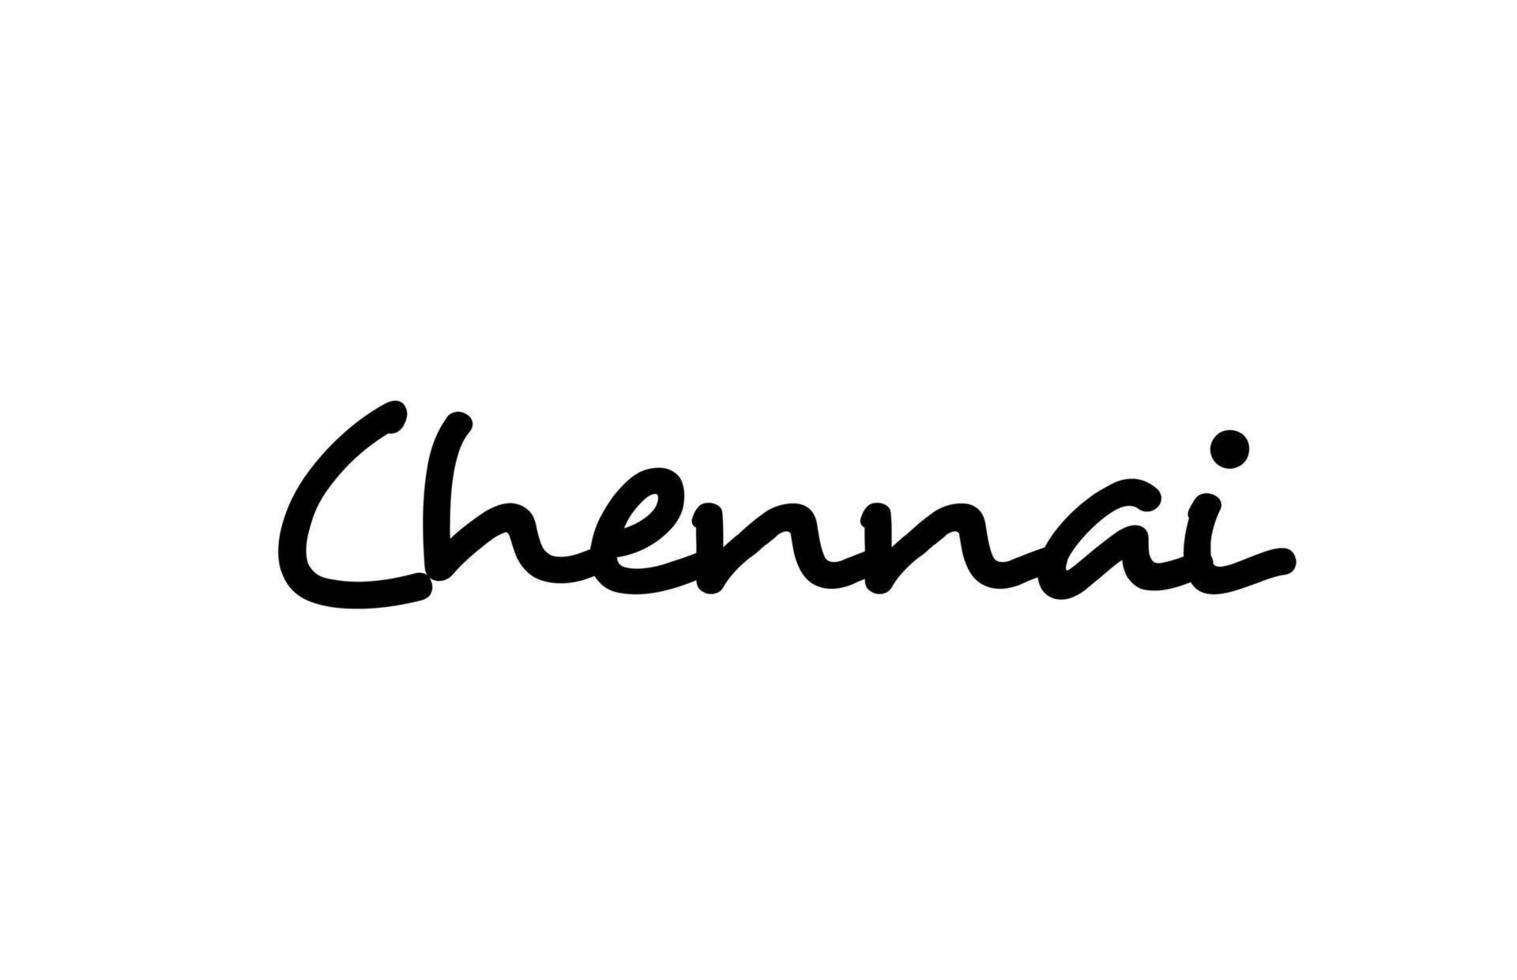 chennai stadt handgeschriebener worttext handbeschriftung. Kalligraphie-Text. Typografie in schwarzer Farbe vektor